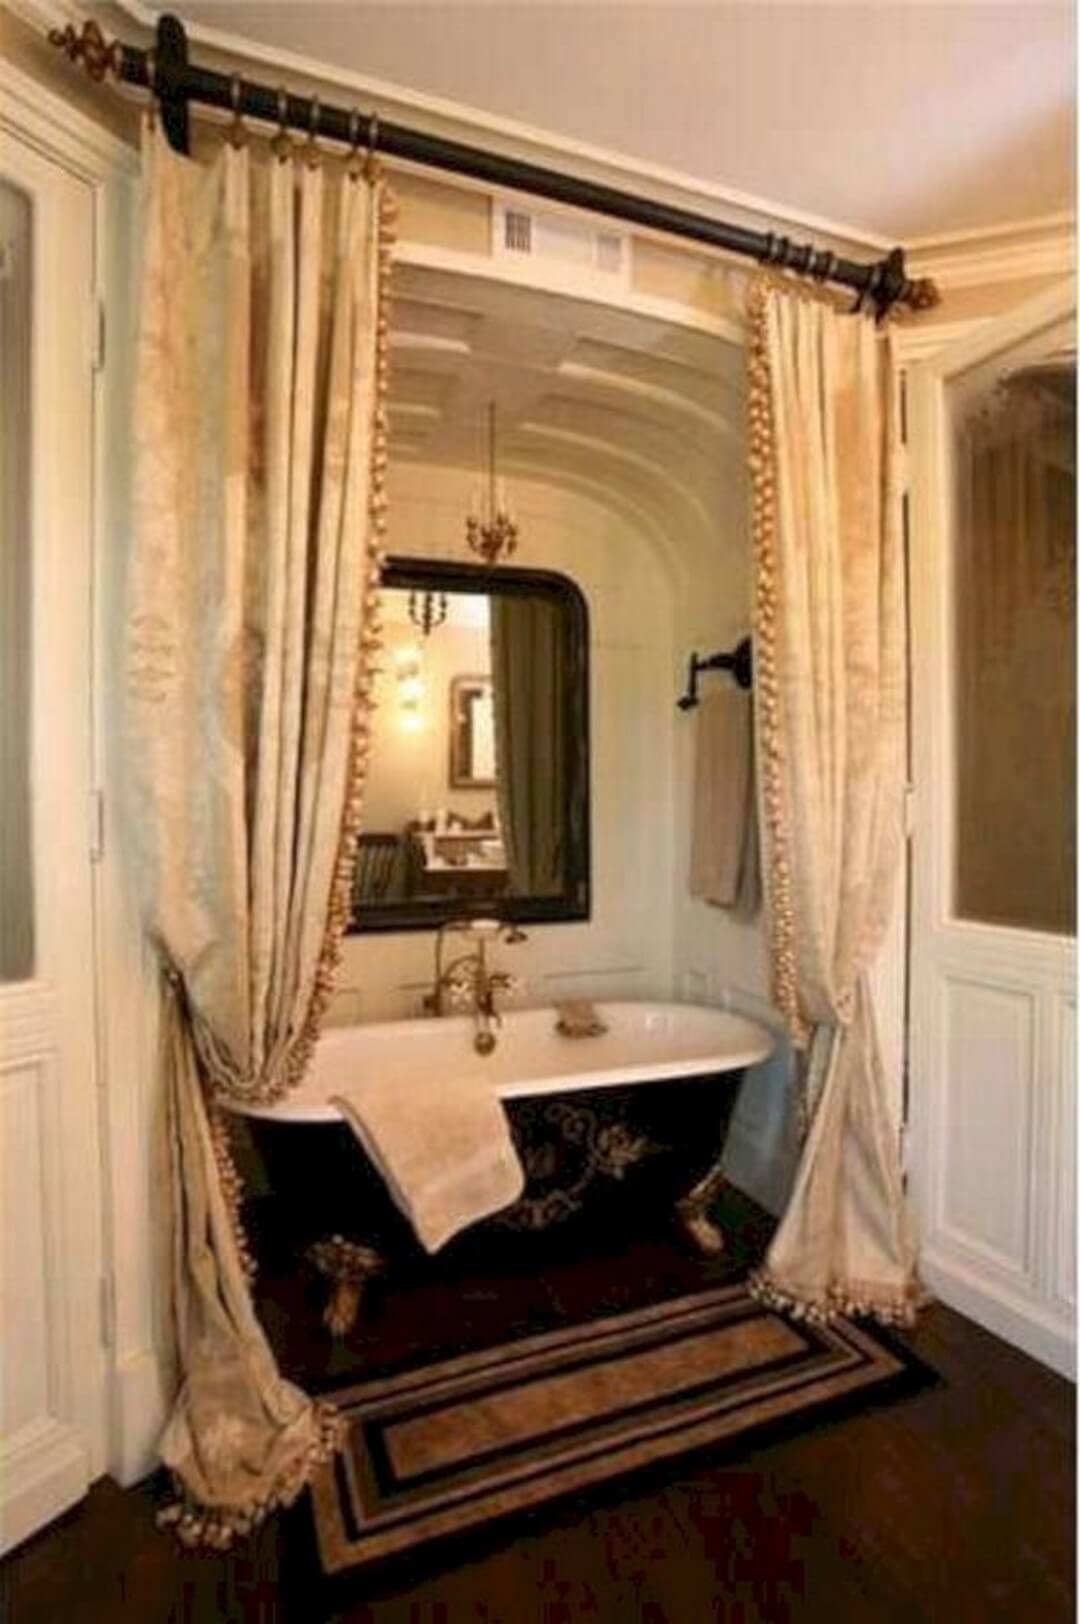 Fantastiskt viktorianskt badrum